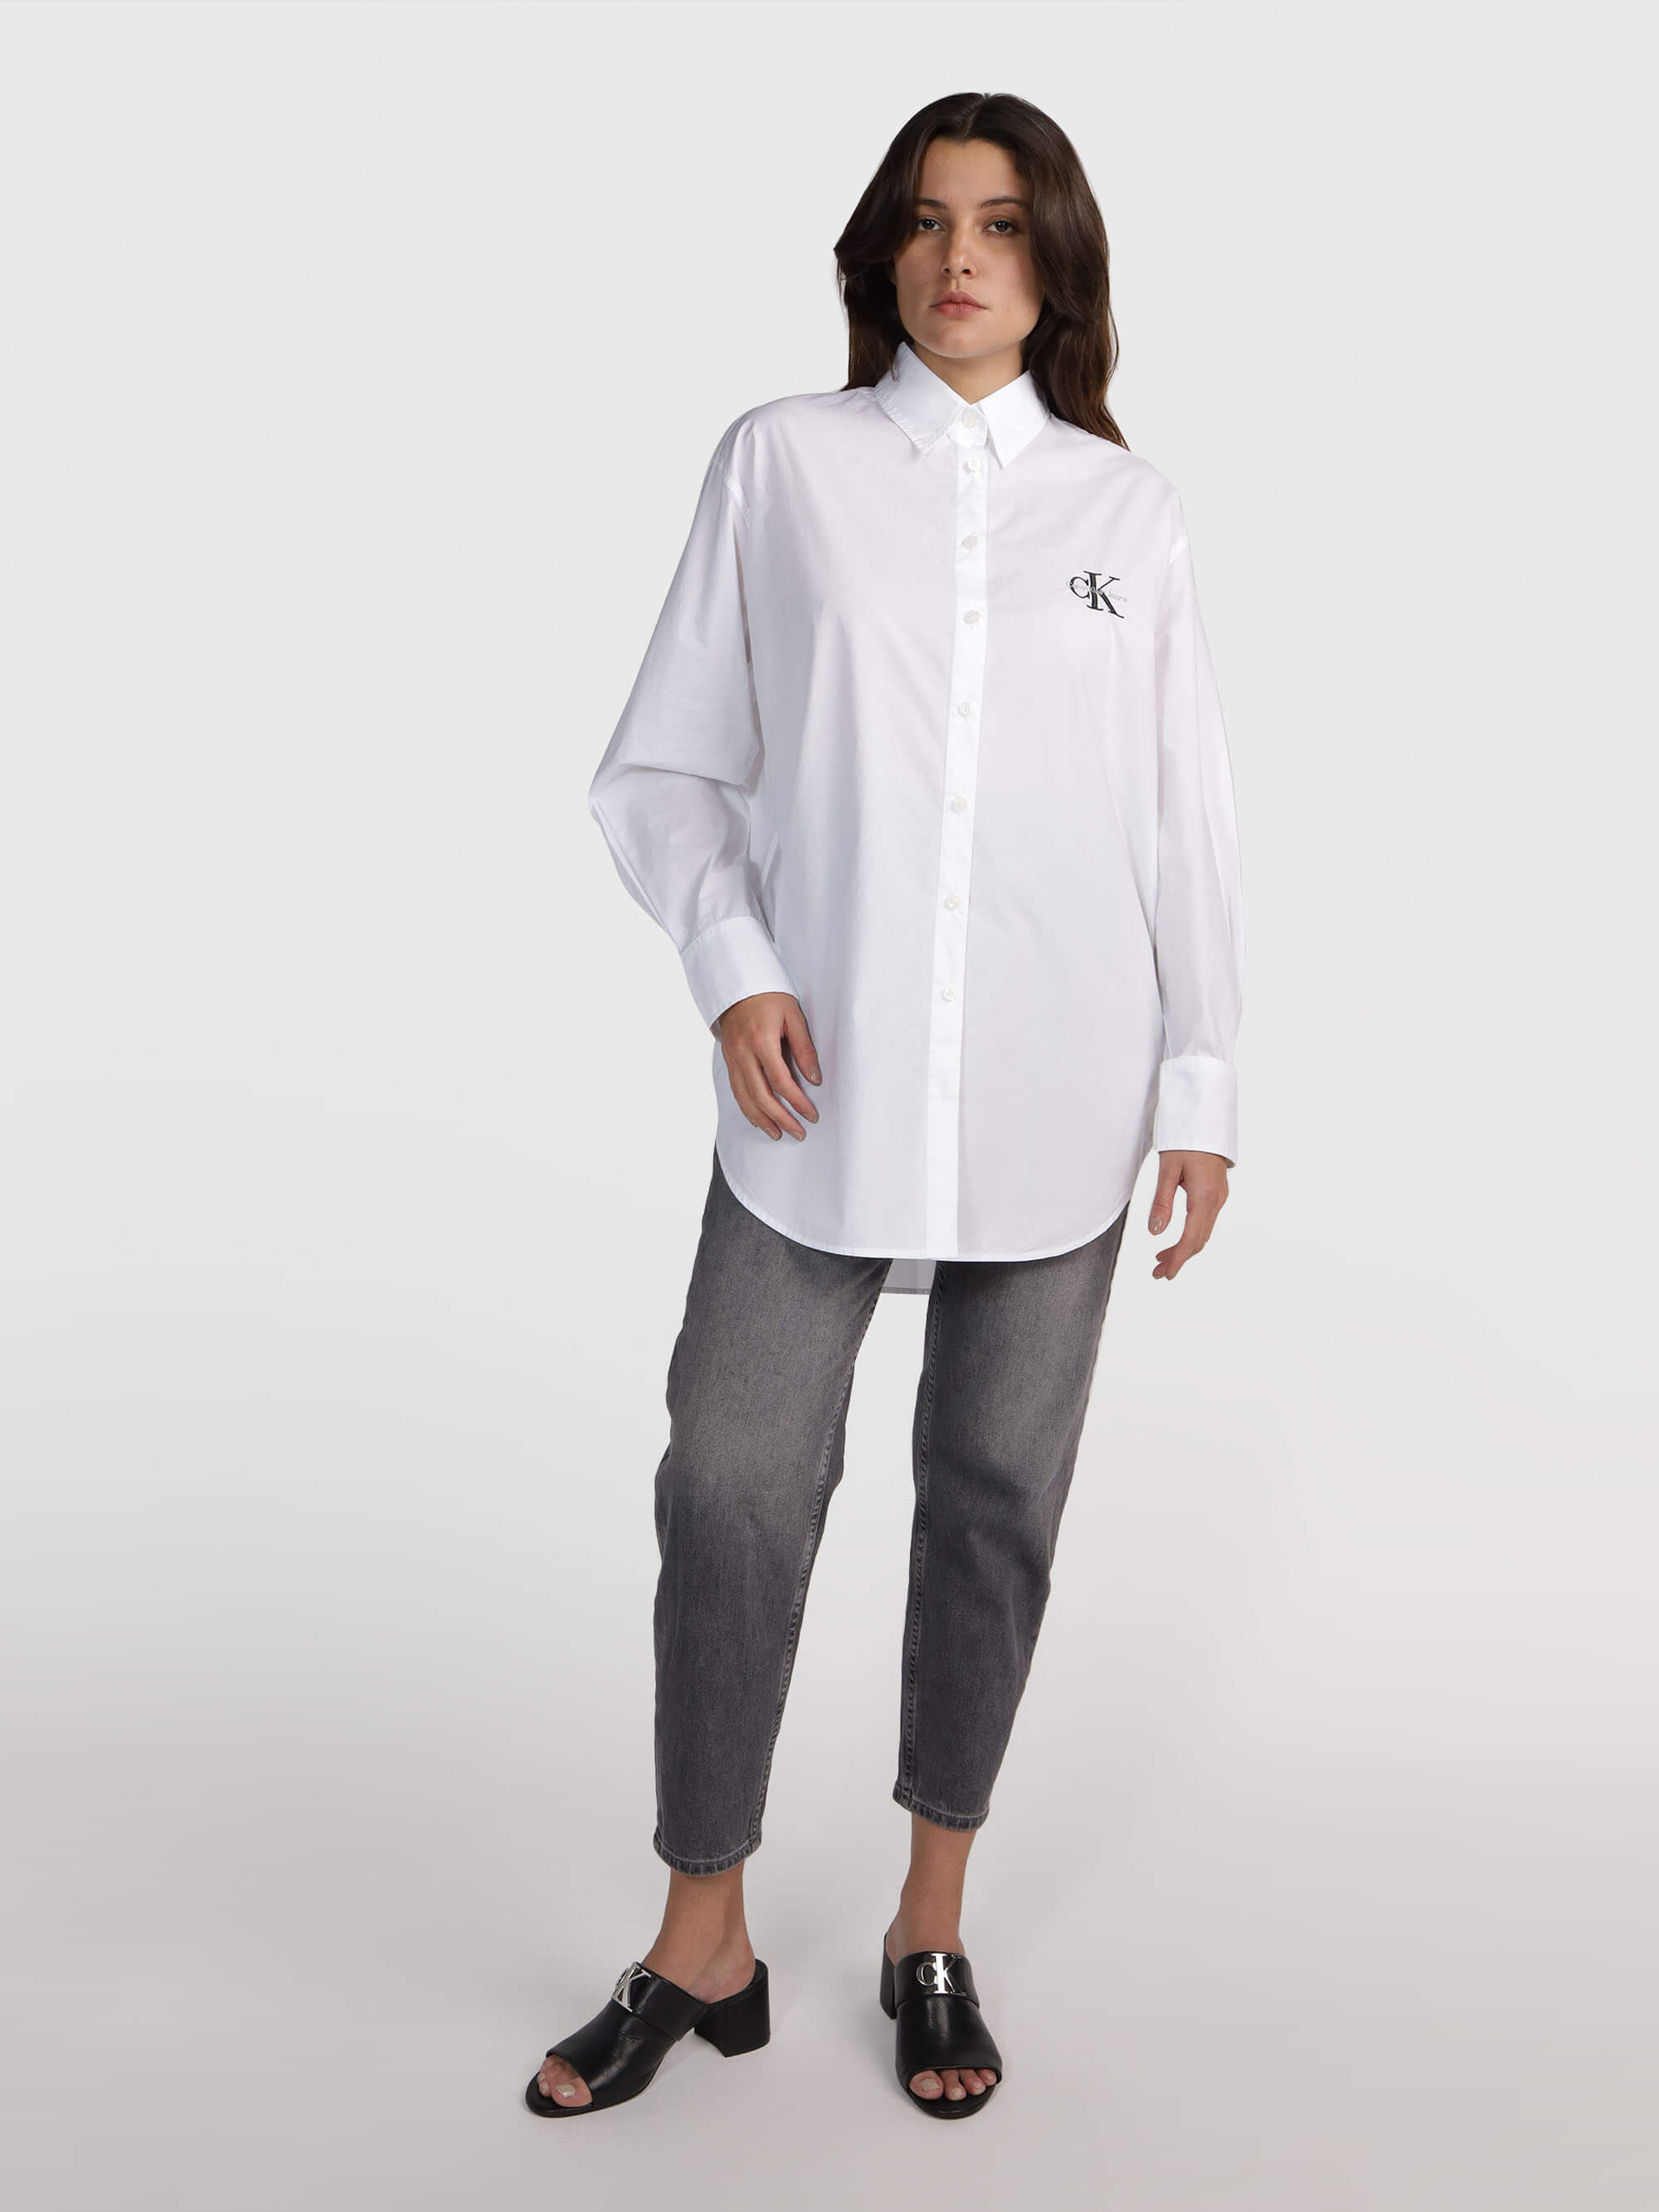 Camisa Calvin Klein con Logo Mujer Blanco